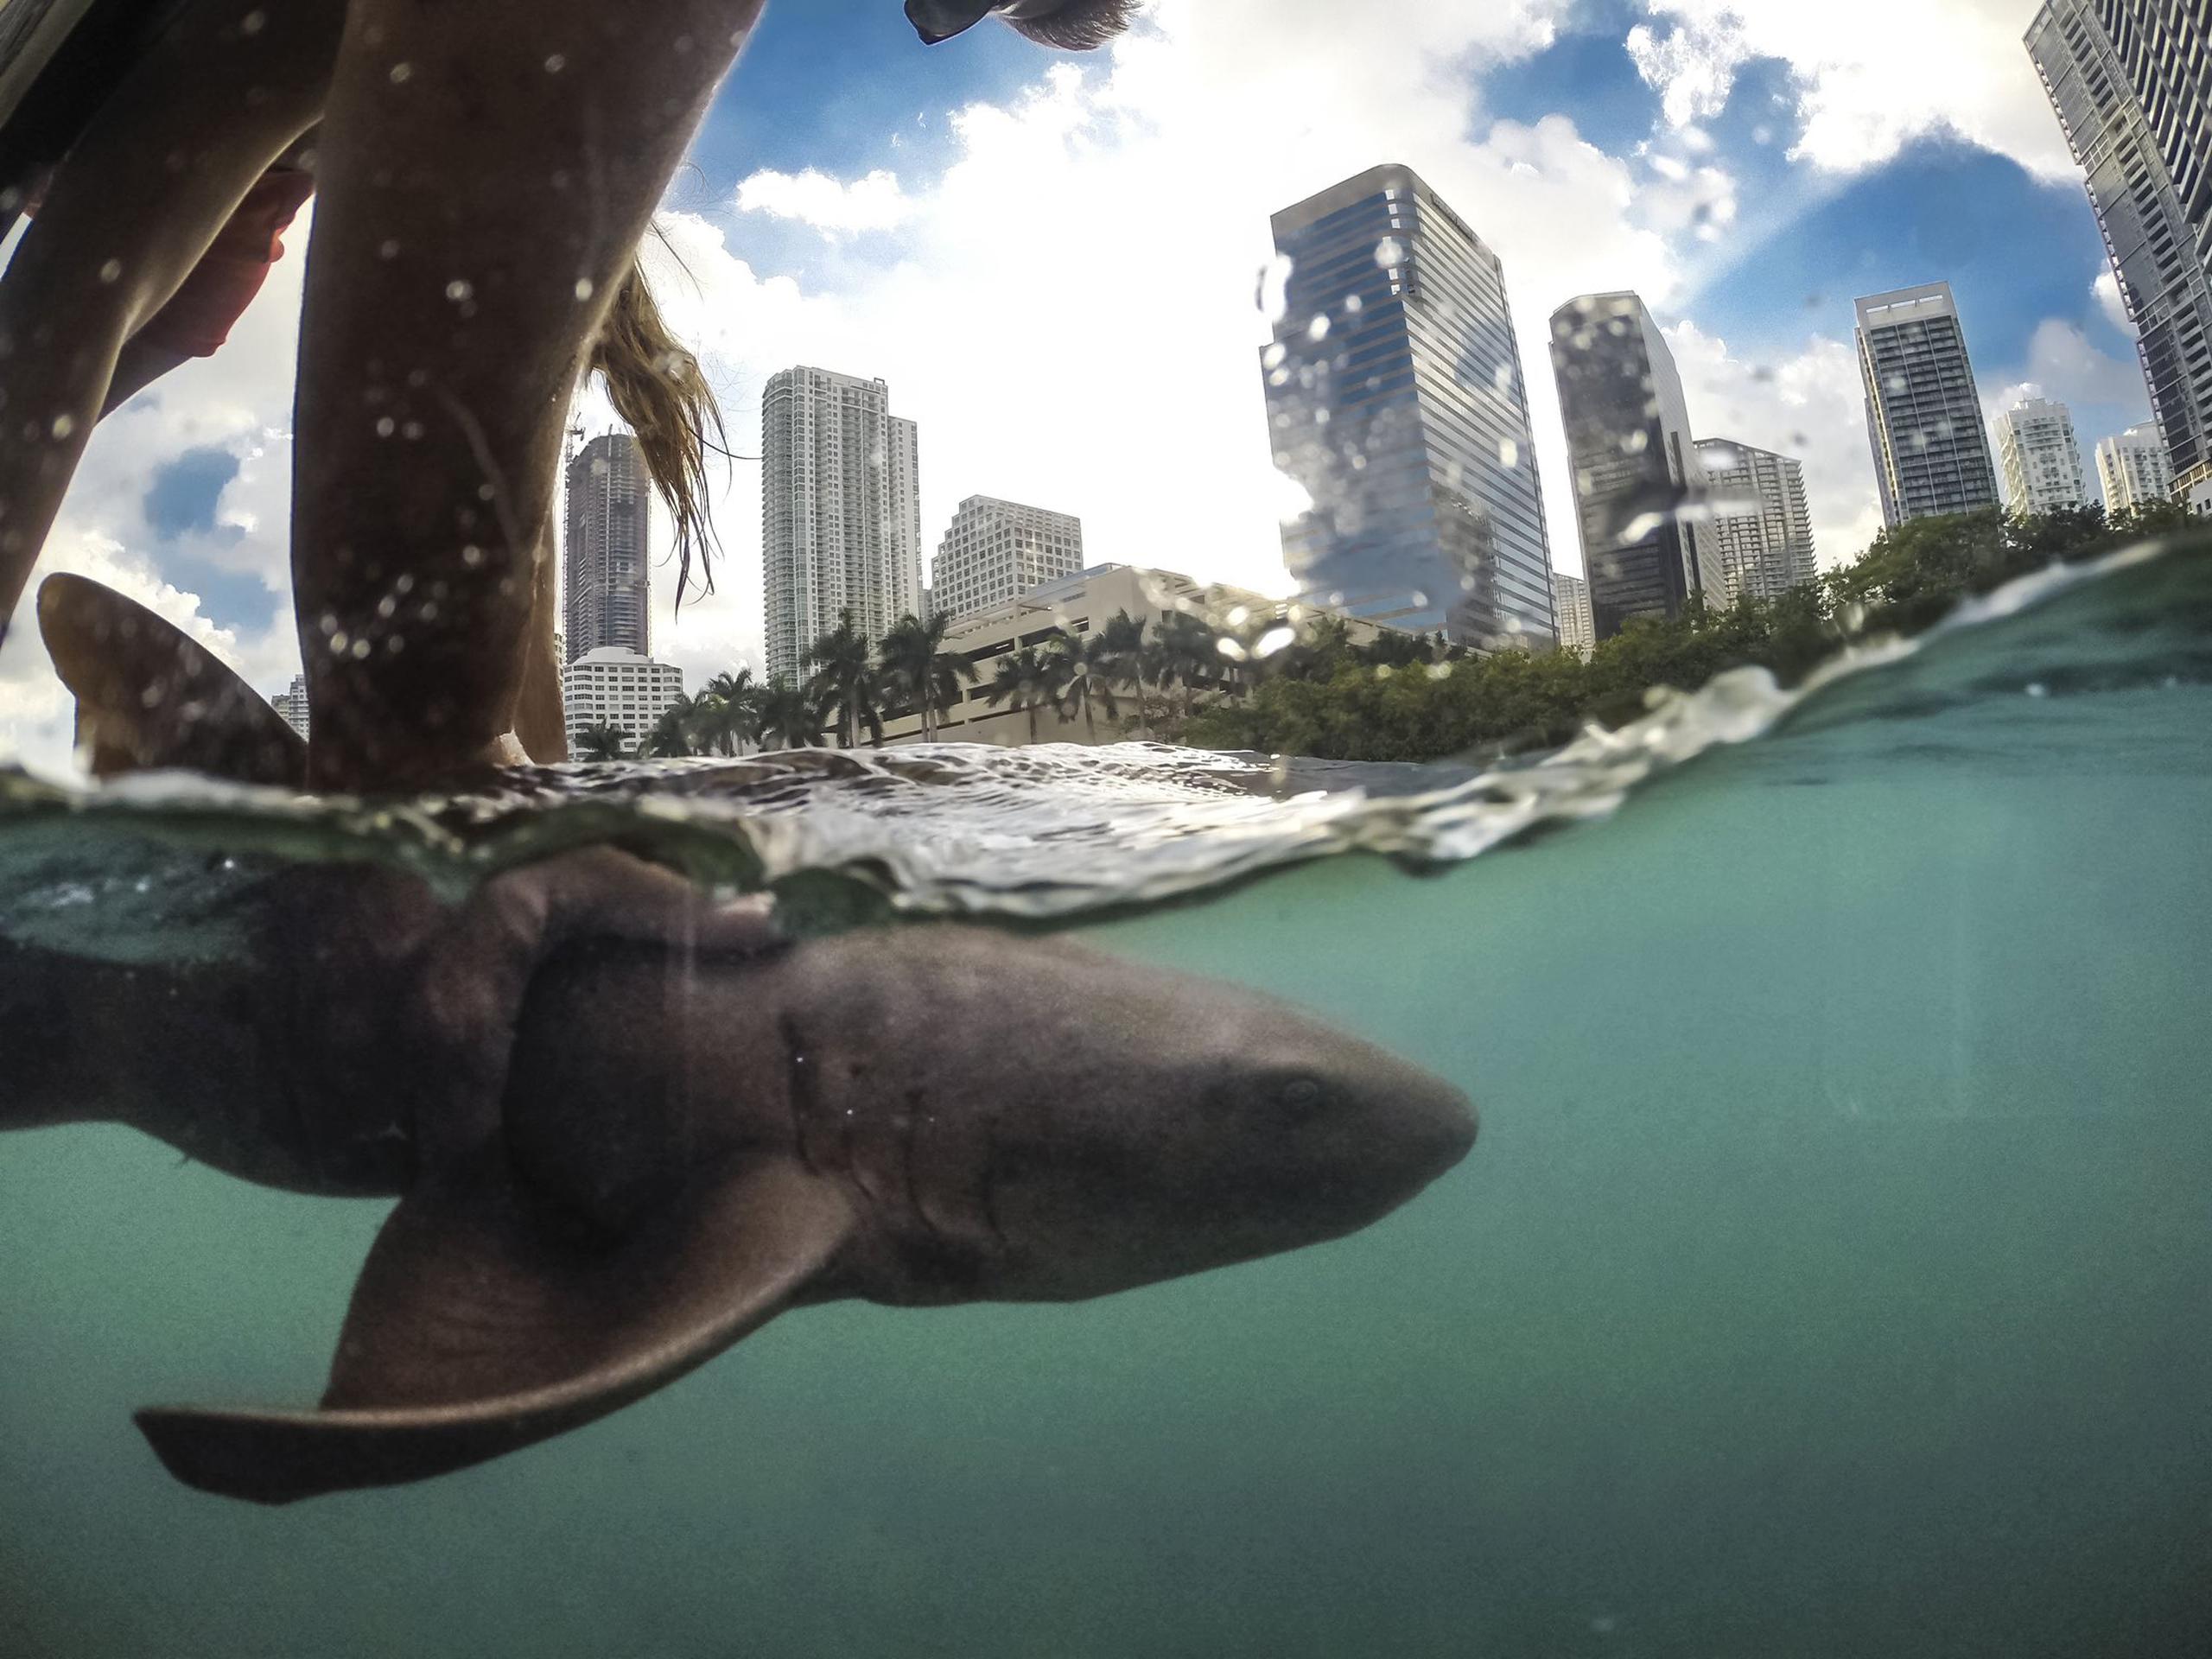 Fotografía cedida por el Programa de Investigación y Conservación de Tiburones de la Universidad de Miami (UM Shark Research) donde se aprecia a una persona mientras sostiene a un tiburón nodriza frente al paisaje urbano del centro de Miami, Florida. EFE/Robbie Roemer/UM Shark Research